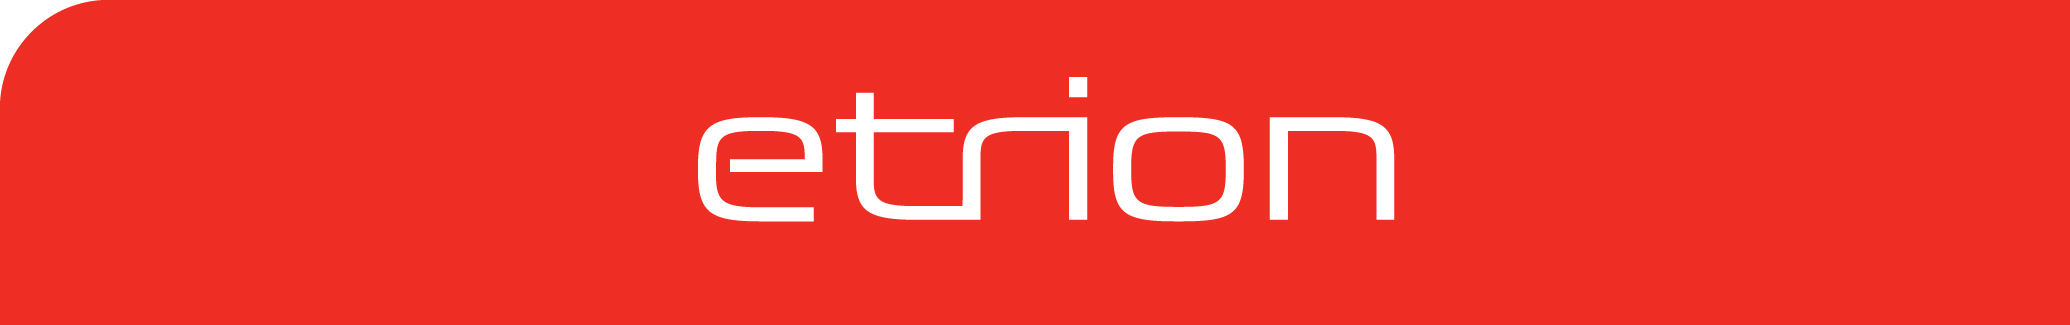 Etrion-Logo-RGB.jpg